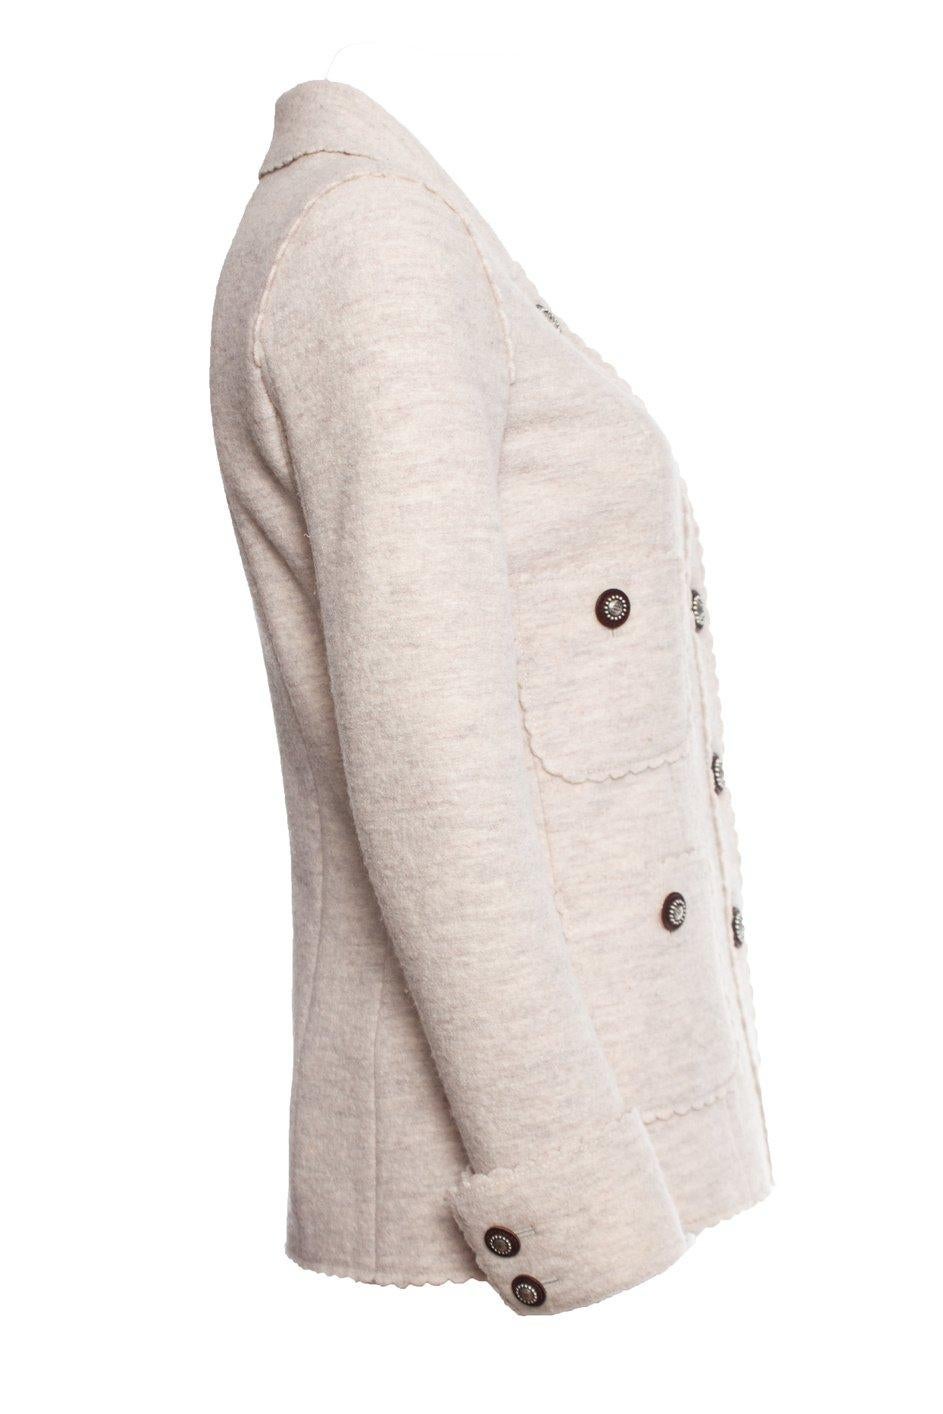 Chanel 9K$ Runway Paris / Dallas Beige Tweed Jacket 15